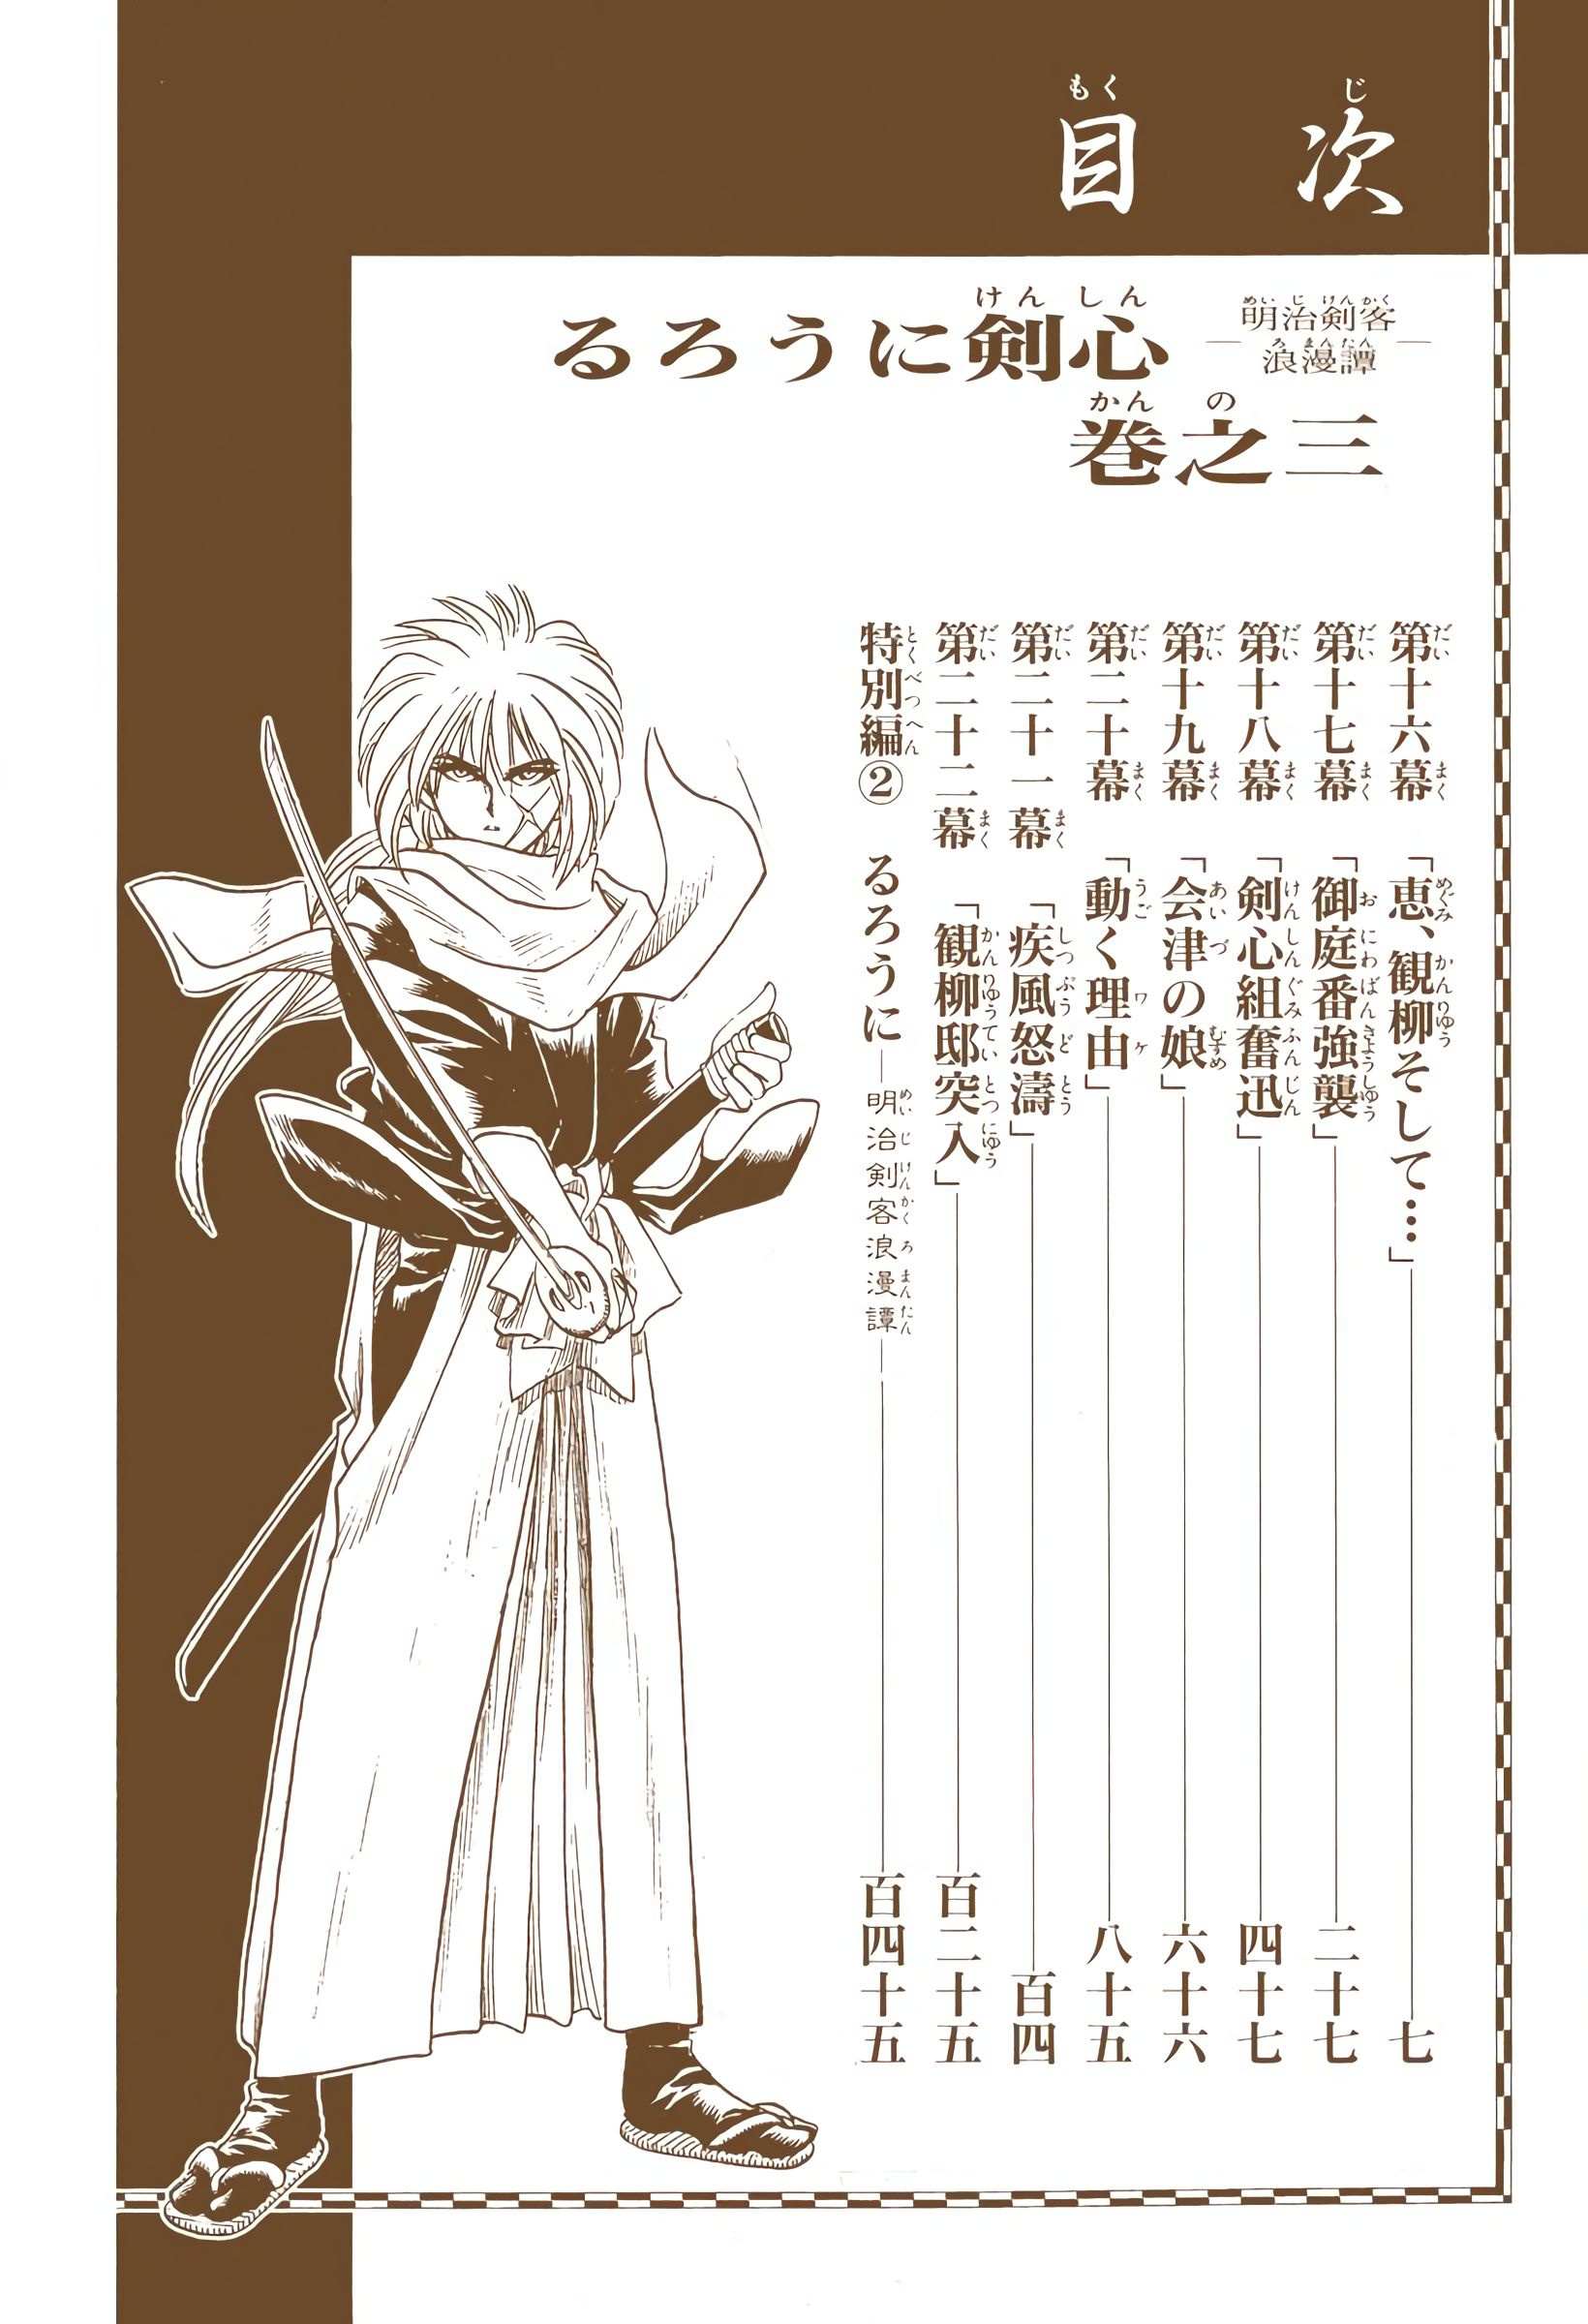 Rurouni Kenshin: Meiji Kenkaku Romantan - Digital Colored - chapter 16 - #5